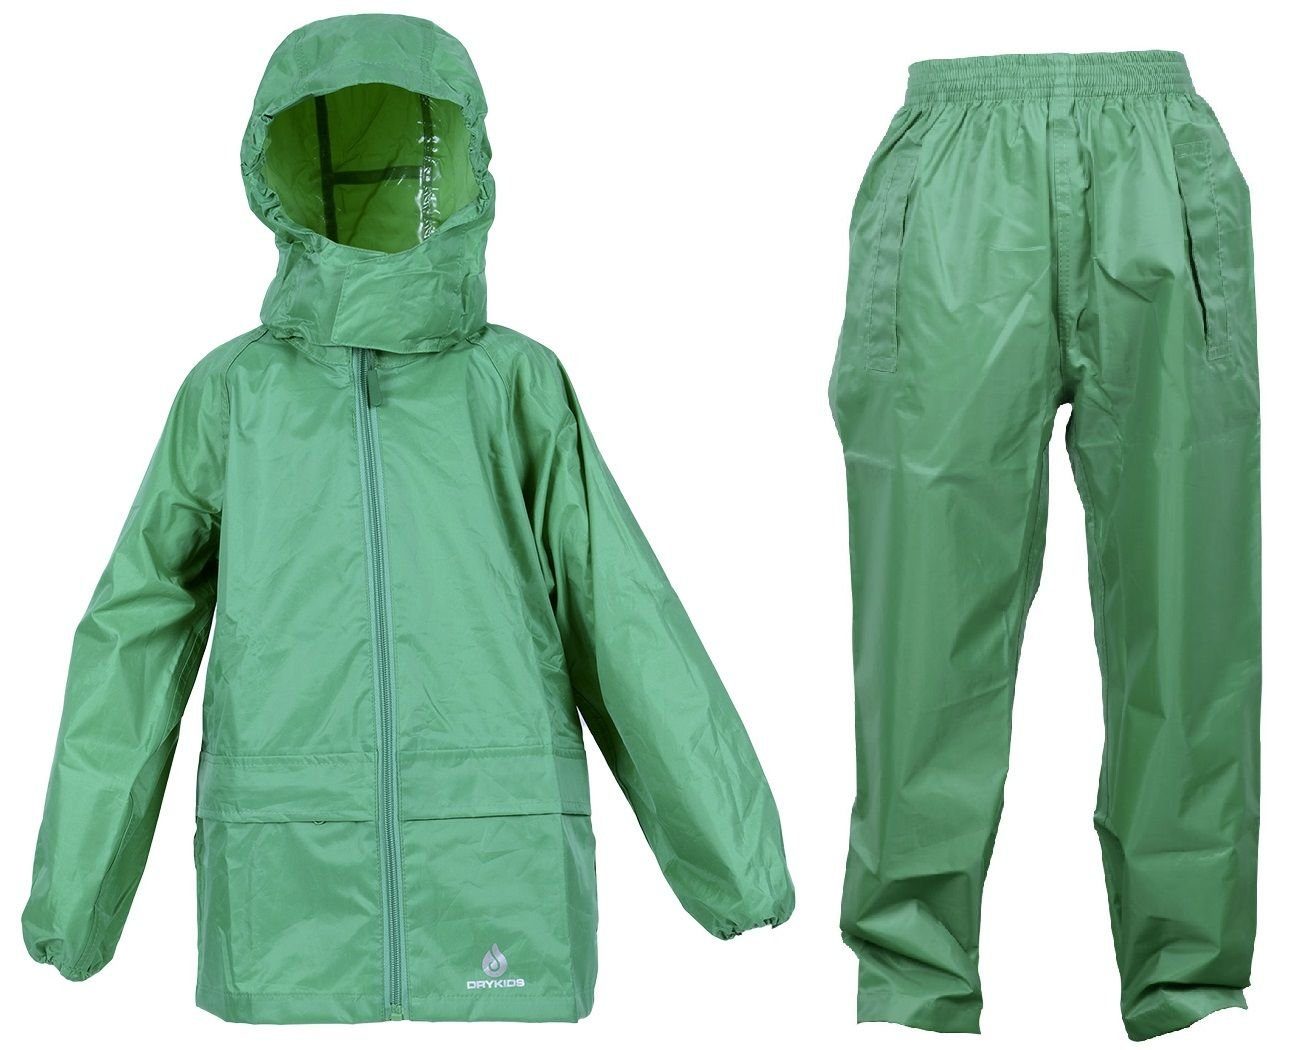 DRY KIDS Regenanzug (1-tlg), Wasserdichtes Kinder Regenanzug-Set, reflektierende Regenbekleidung Grün